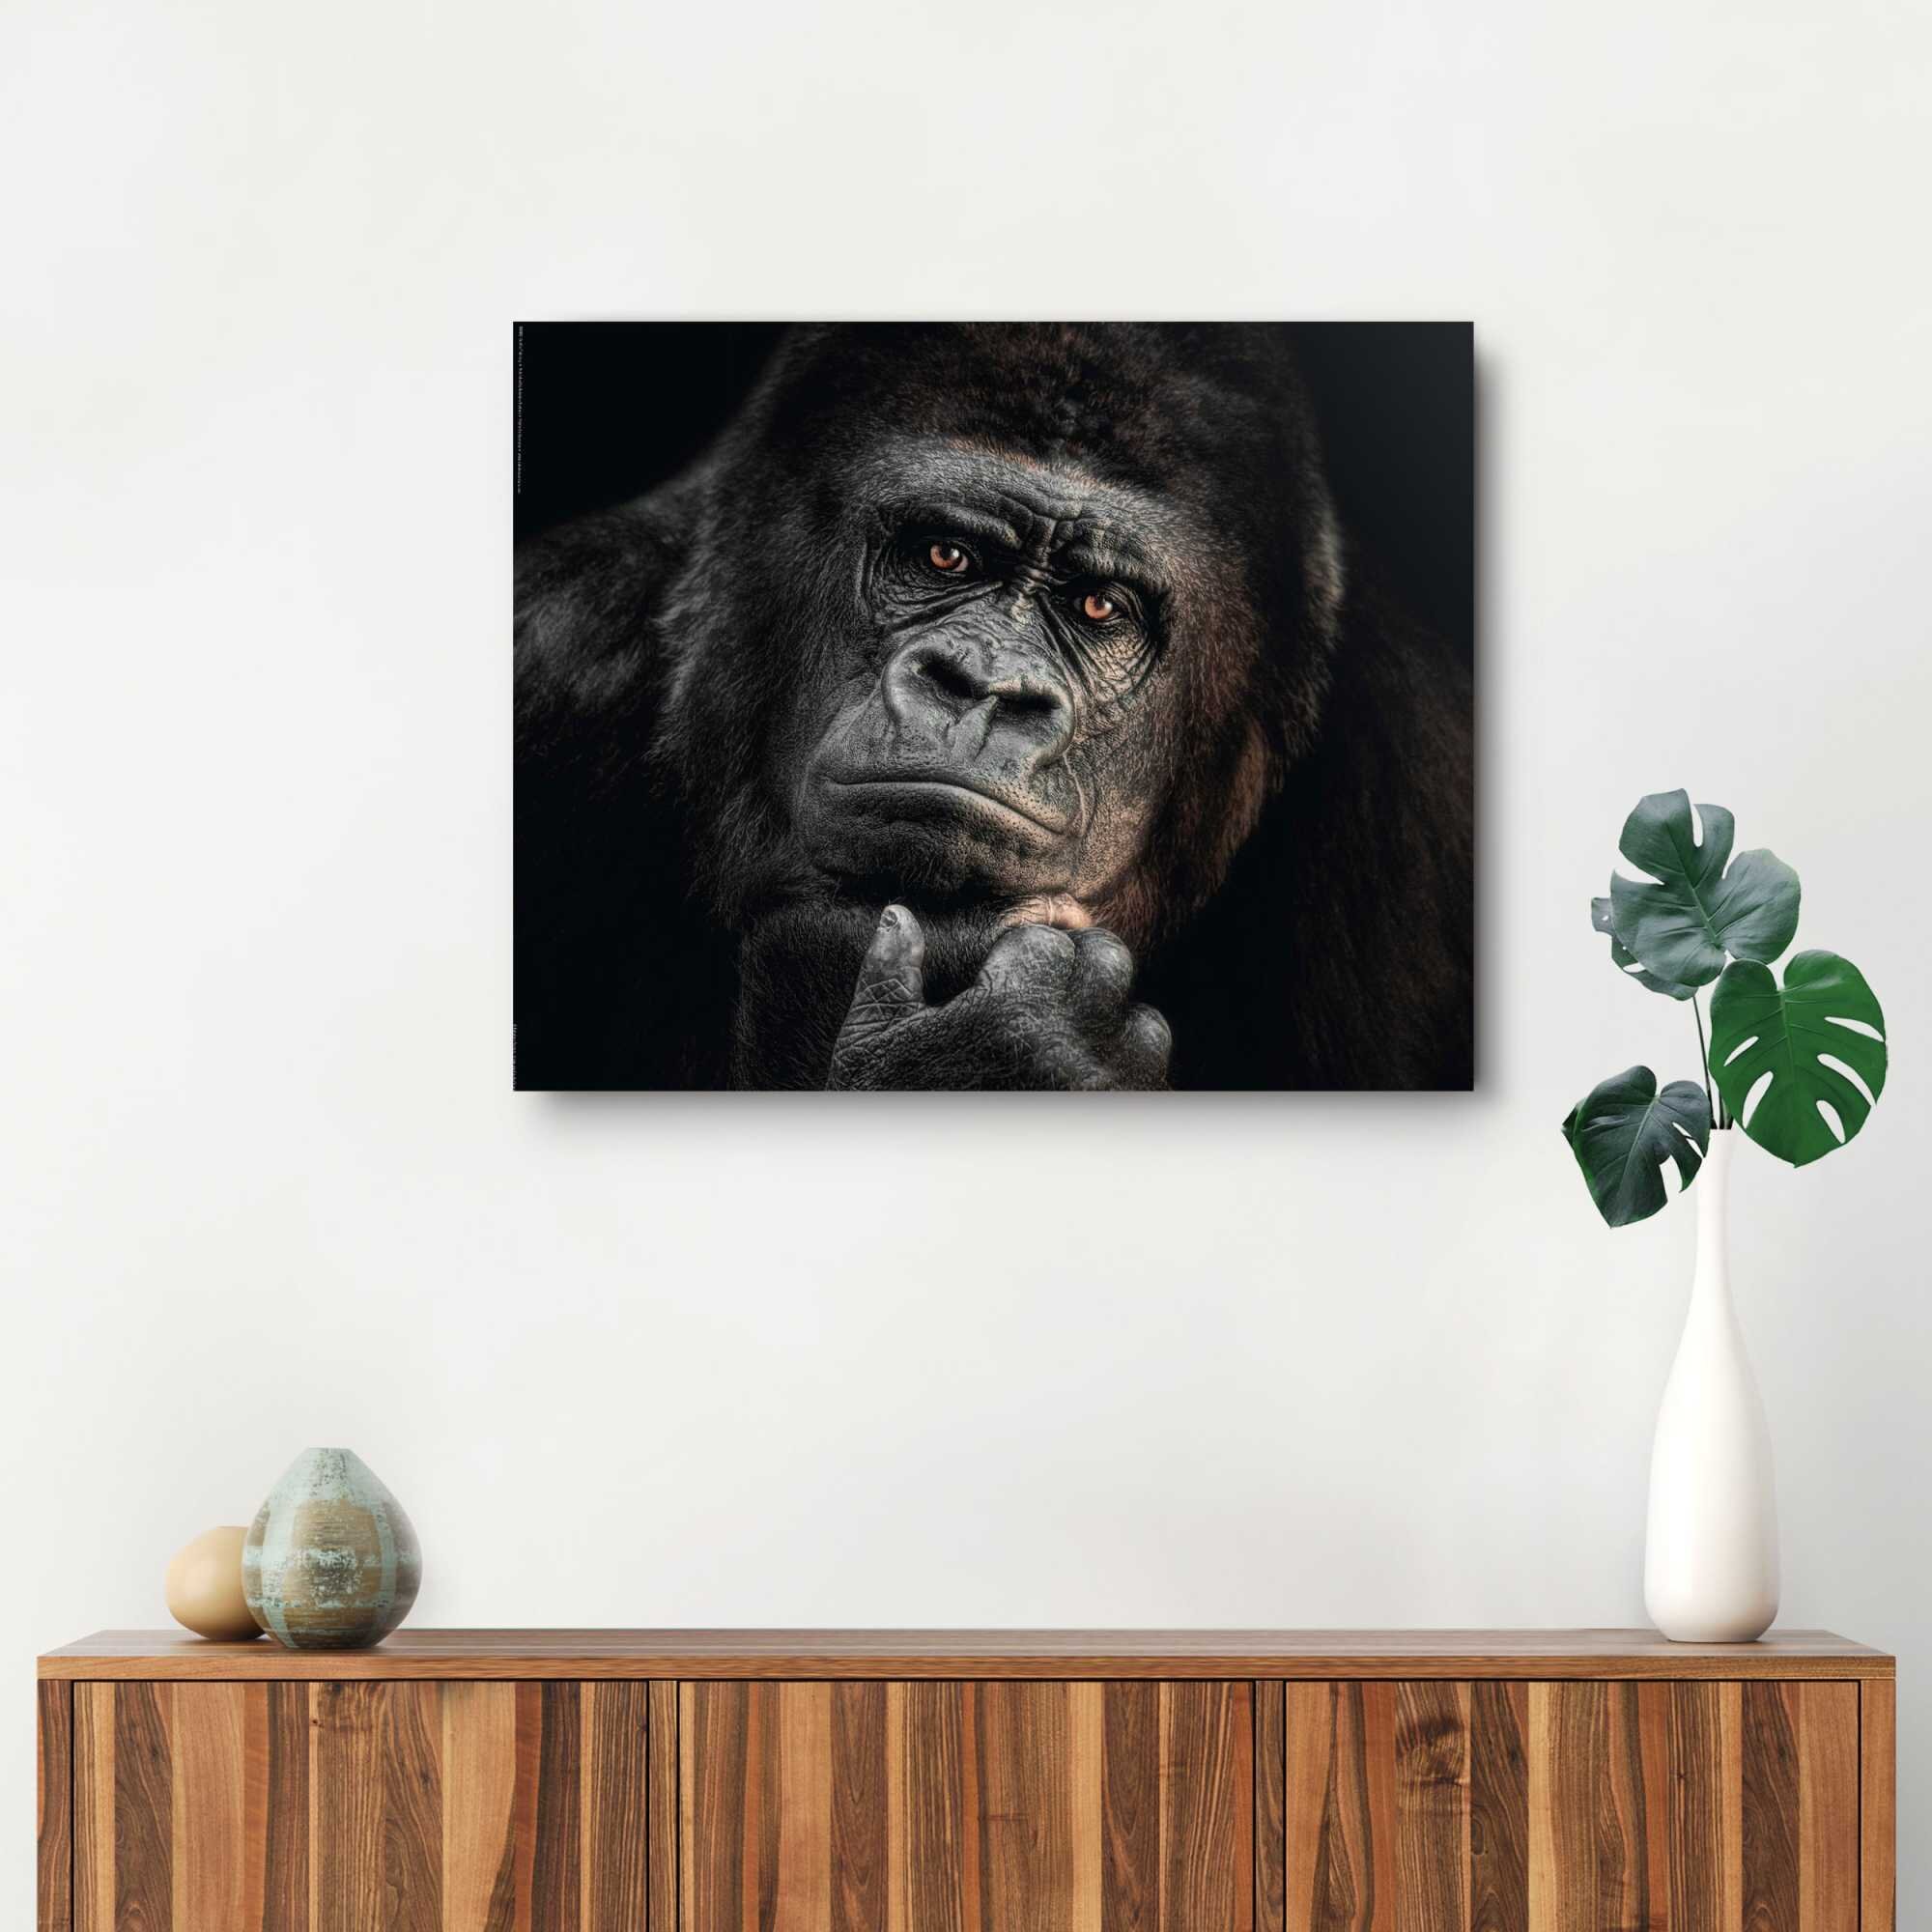 17 Stories Wandbild Deko Panel Gorilla Affe - Kräftig - Nachdenklich